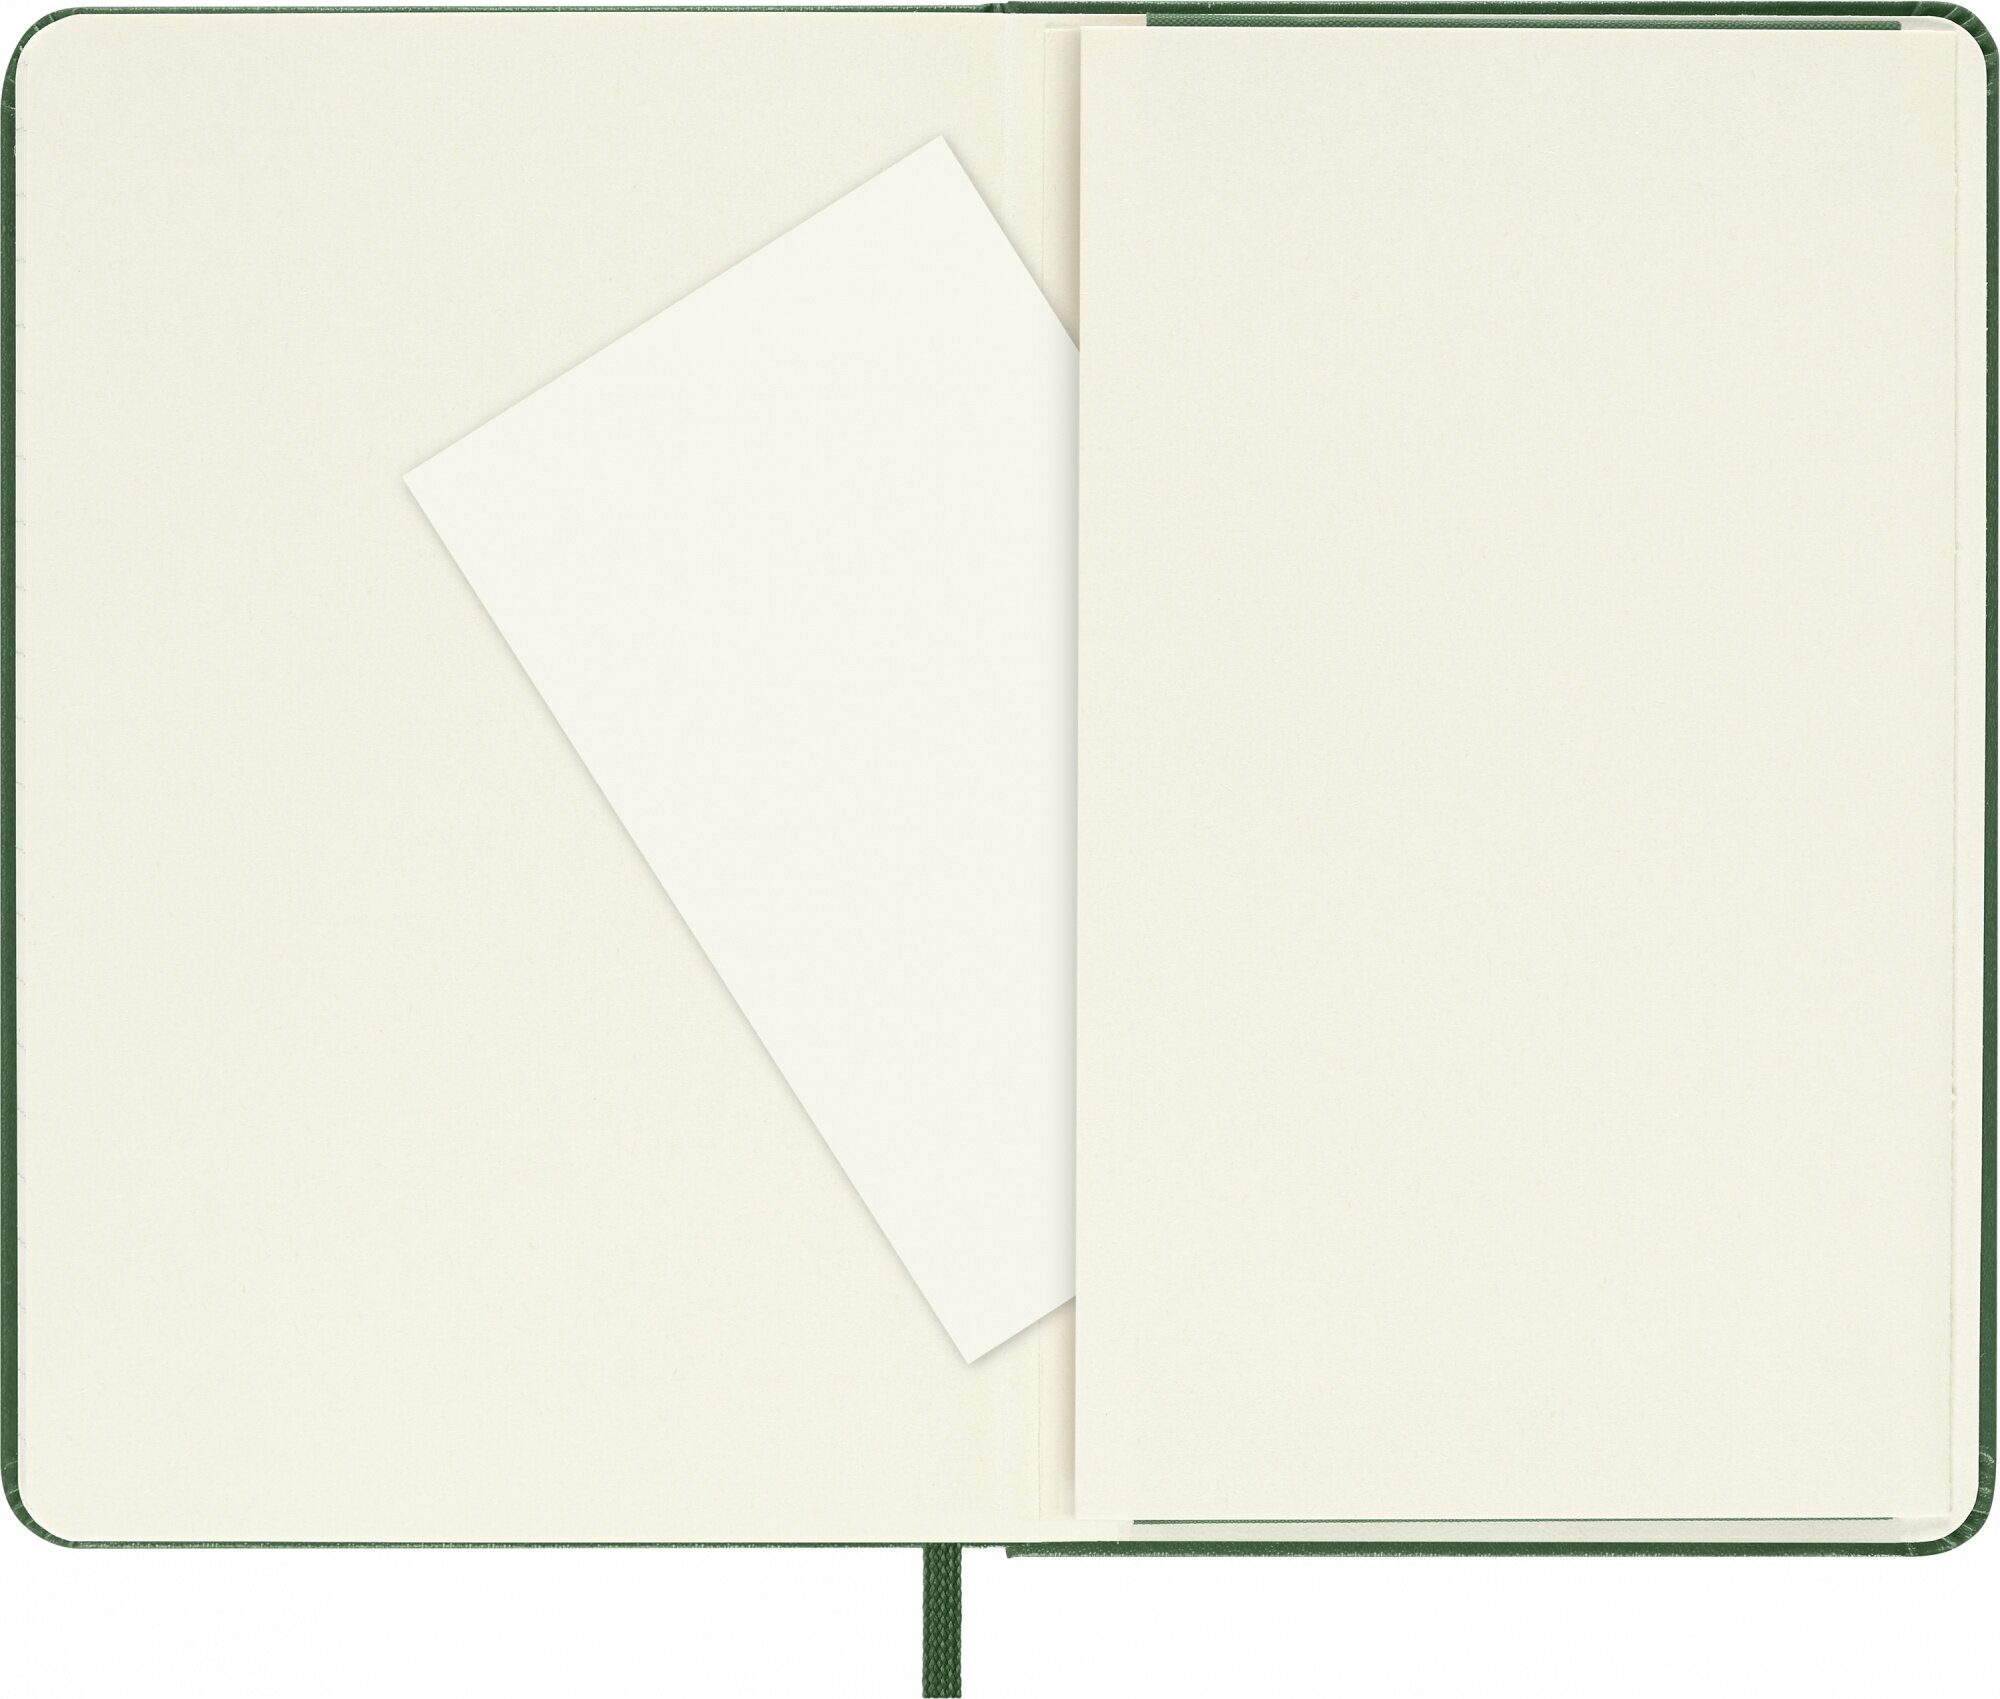 Блокнот Moleskine CLASSIC Pocket 90x140мм 192стр. линейка твердая обложка зеленый 9 шт./кор. - фото №14